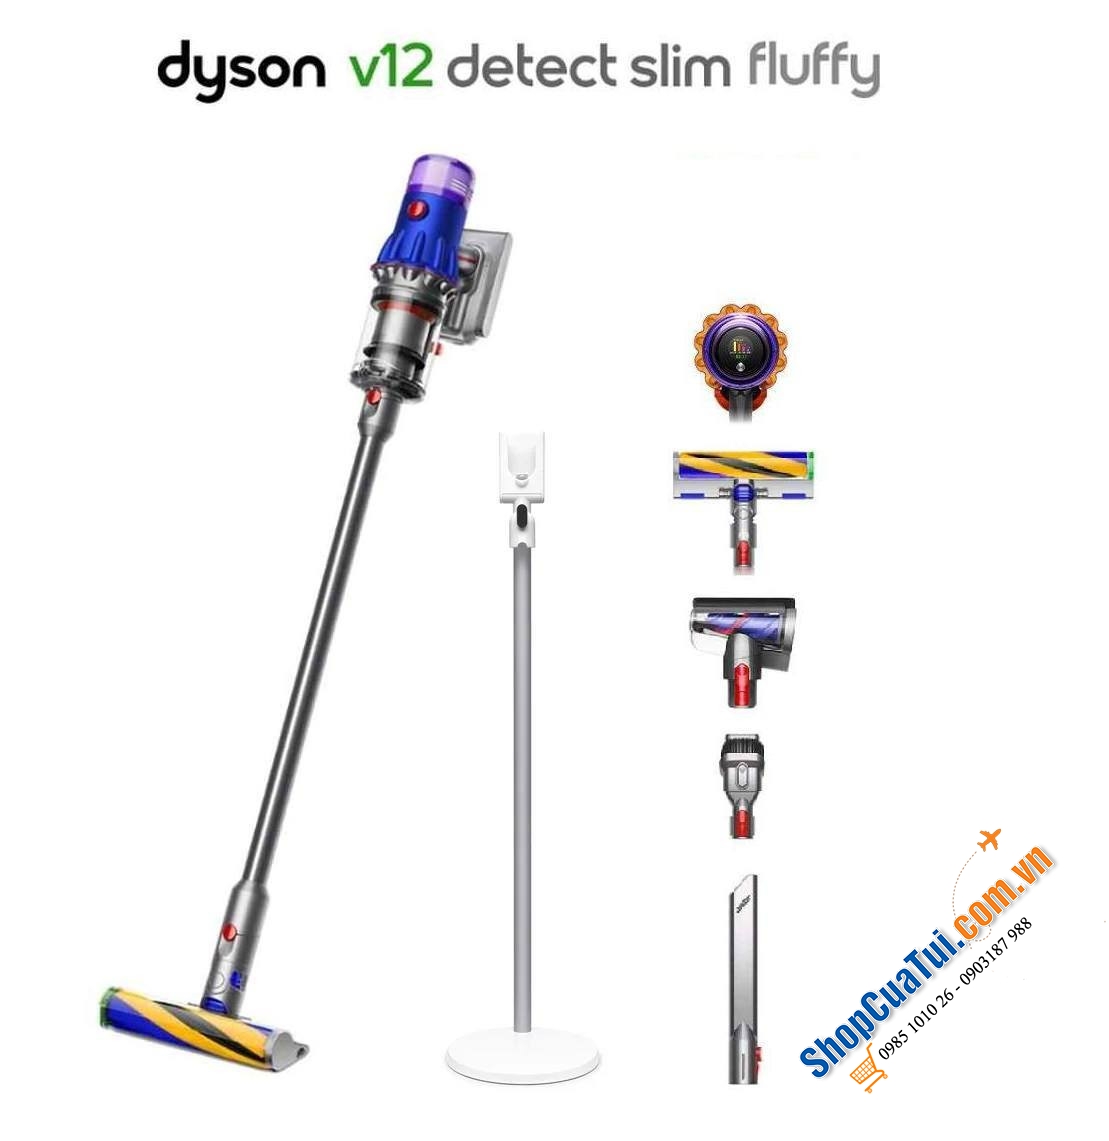 Máy hút bụi Dyson V12 Detect Slim Fluffy - Hút bụi không dây gọn nhẹ nhất của Dyson (tặng kèm dock sàn chính hãng Dyson Floor Dok trị giá 3000k)